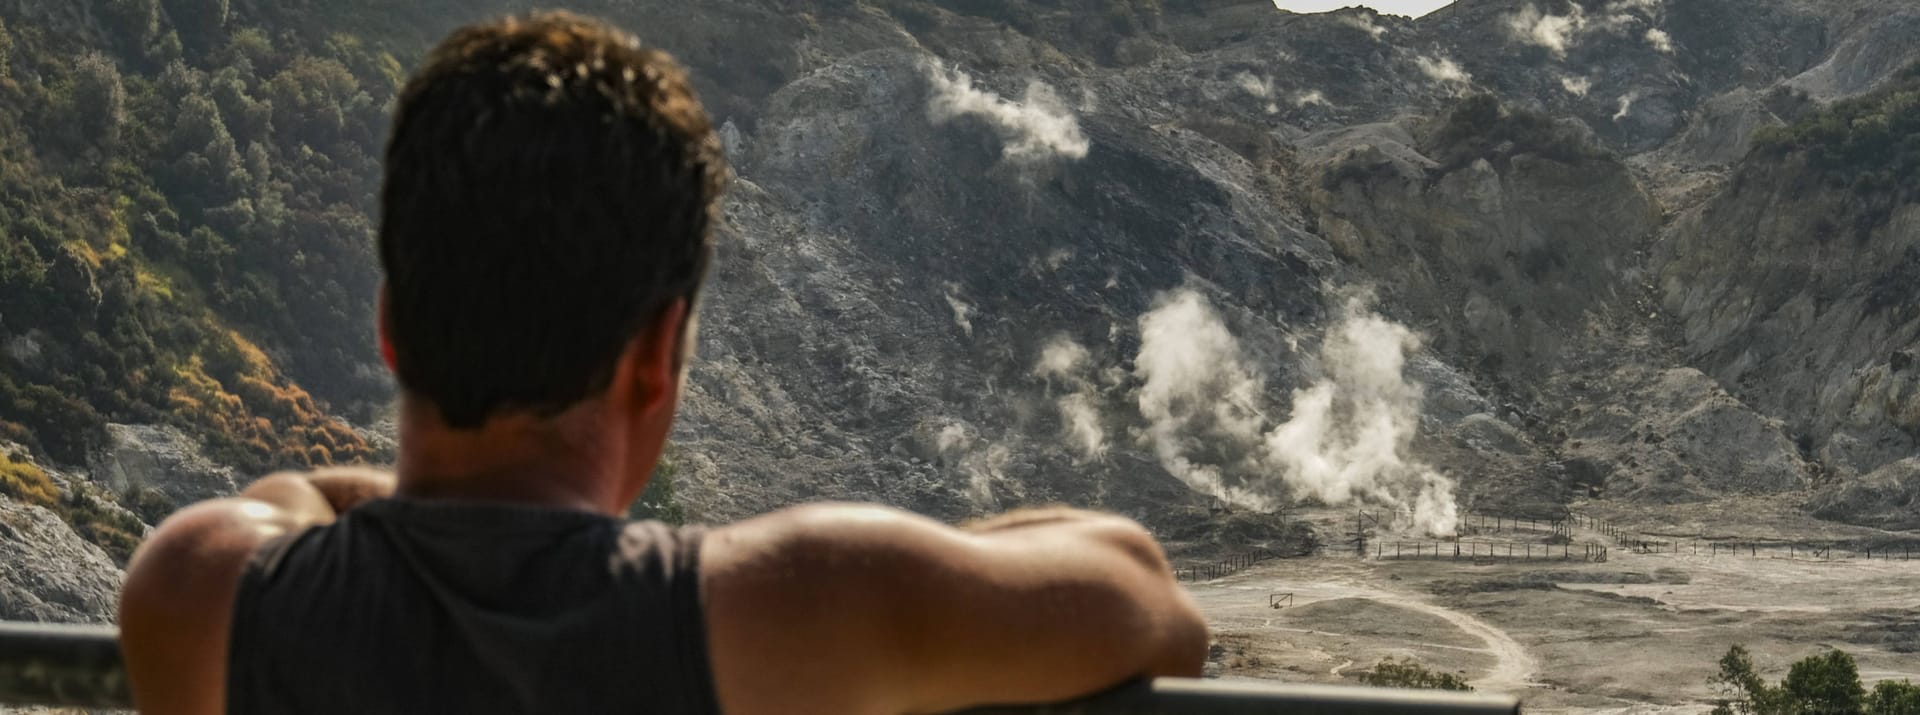 Ein Tourist blickt auf den Krater des Solfatare: Der Solfatare gehört zu den vierzig Vulkanen der Phlegräischen Felder in Italien.